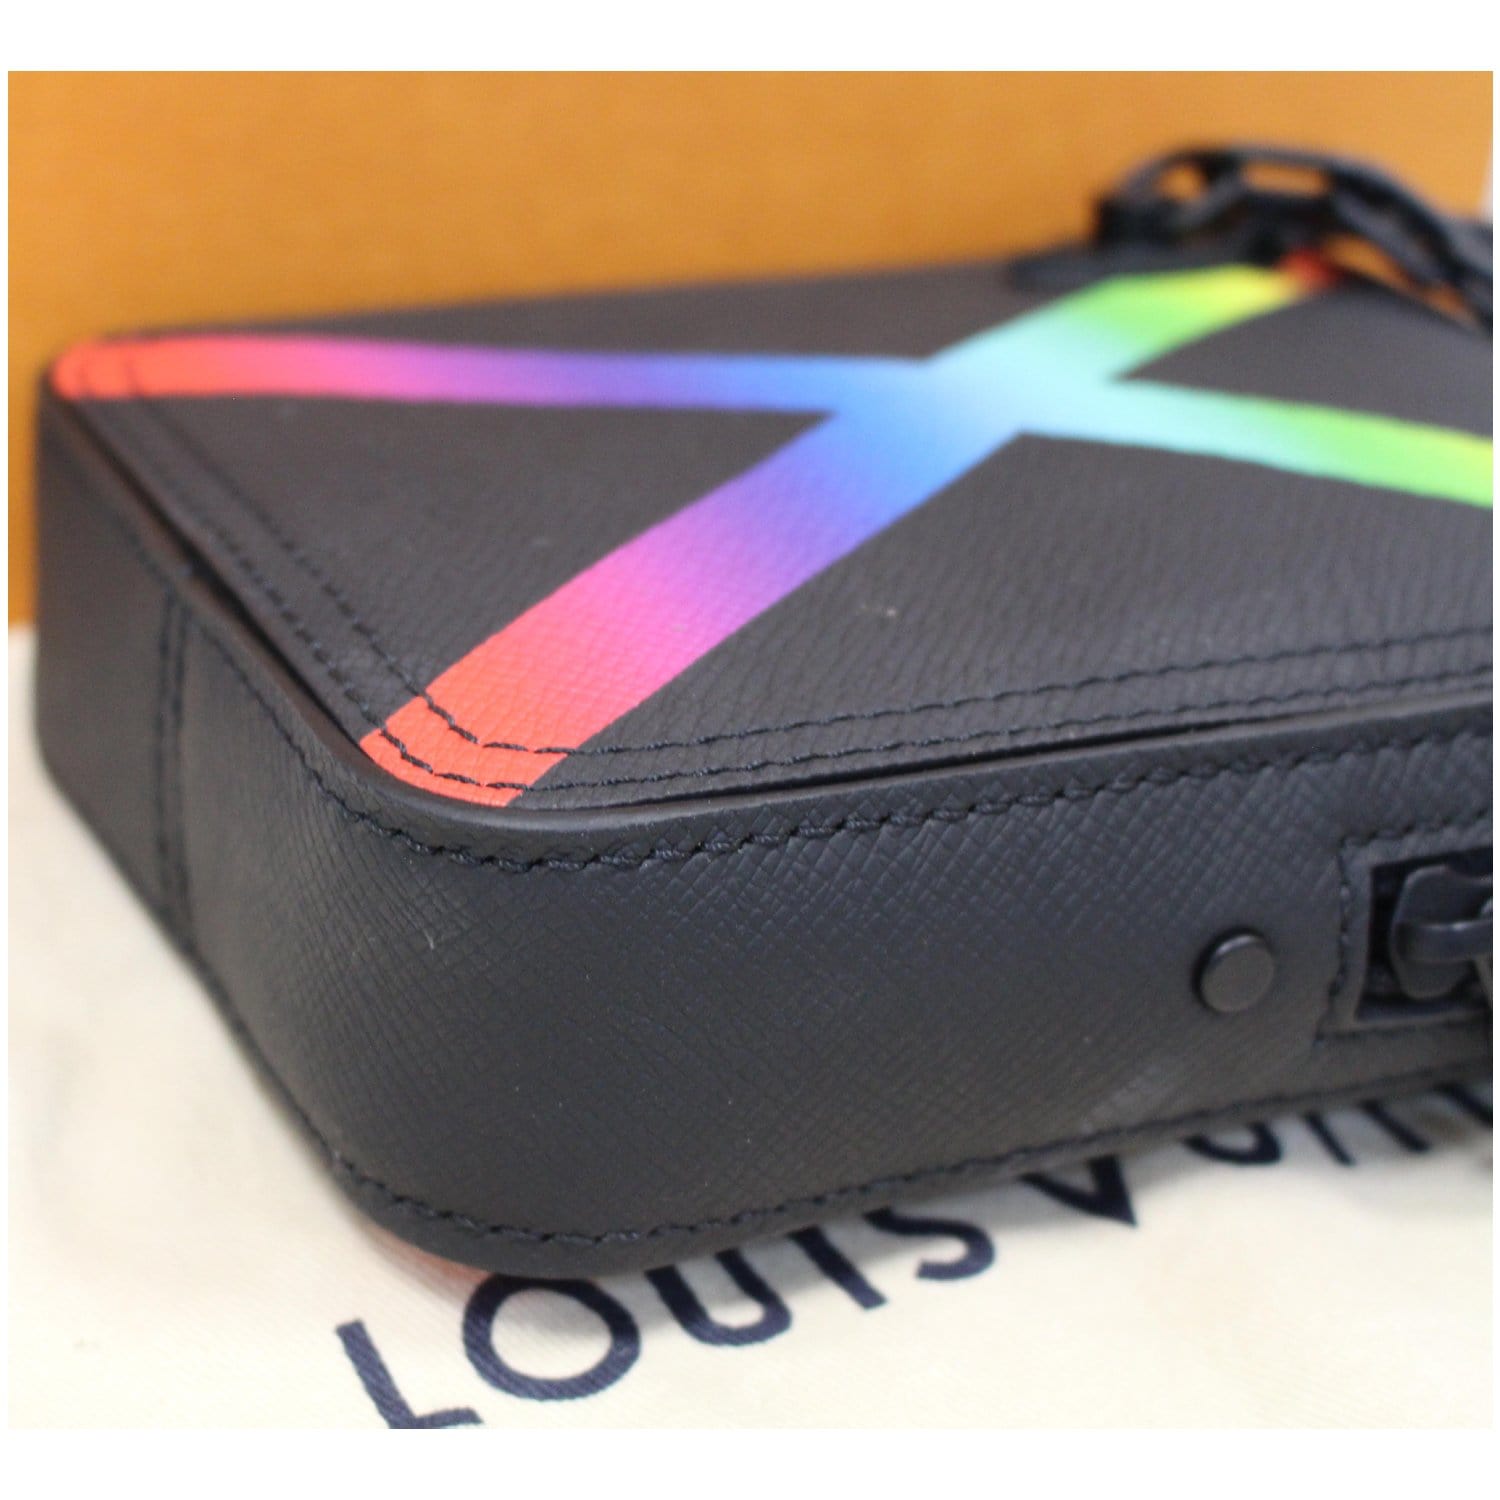 Louis Vuitton 2019 Limited Edition Rainbow Taiga Danube - shop 